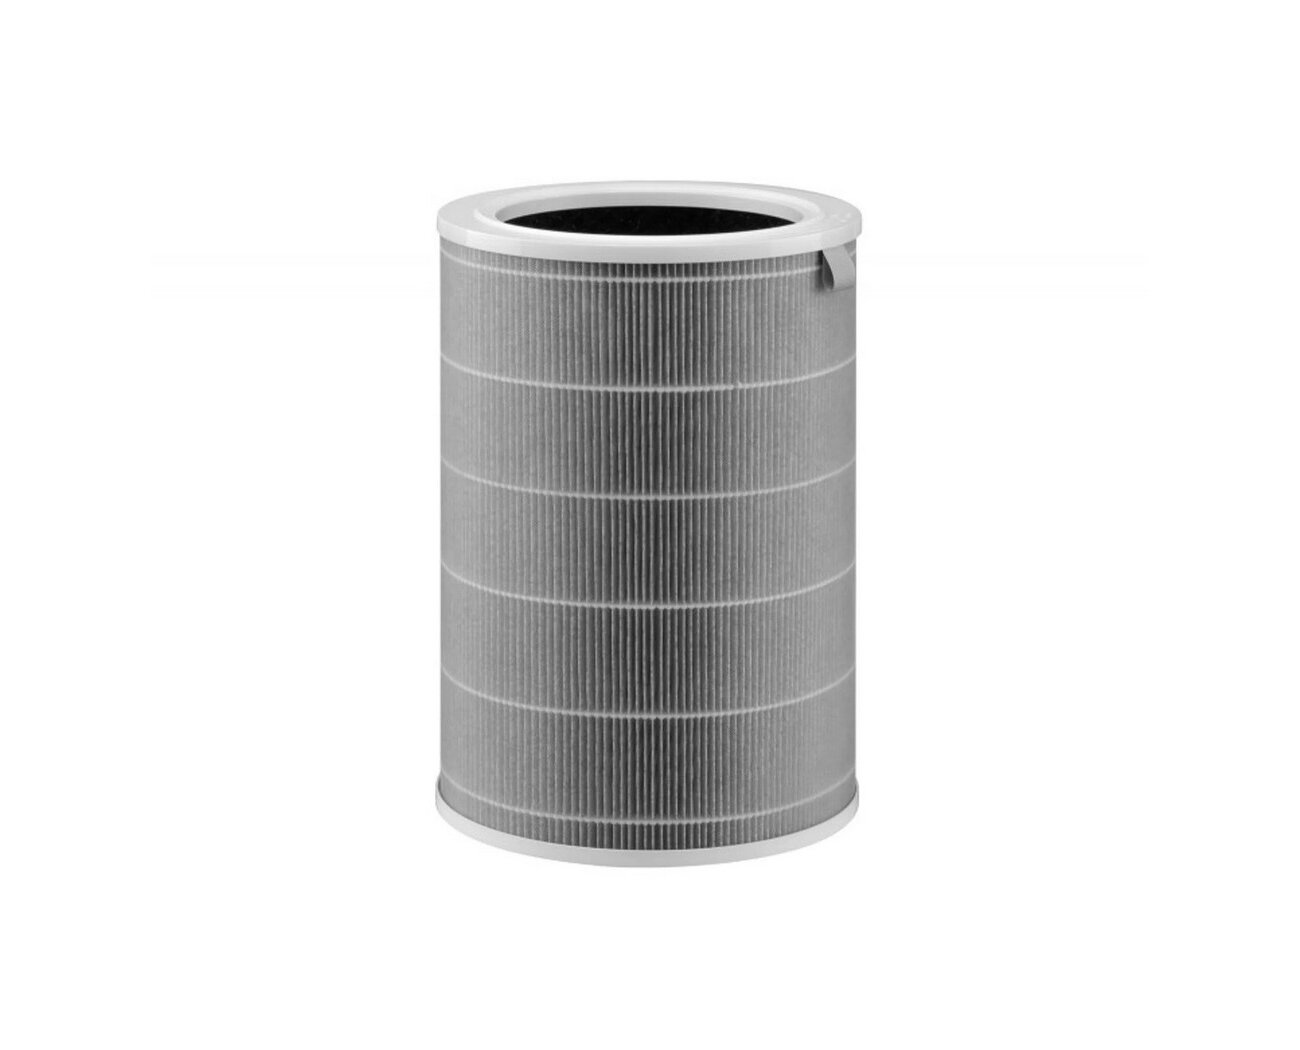 Фильтр для очистителя воздуха Lite Filter Smart Air Purifier 4 Хиаоми. Высокоэффективный фильтрующий материал HEРА Н13 (BHR5272GL)